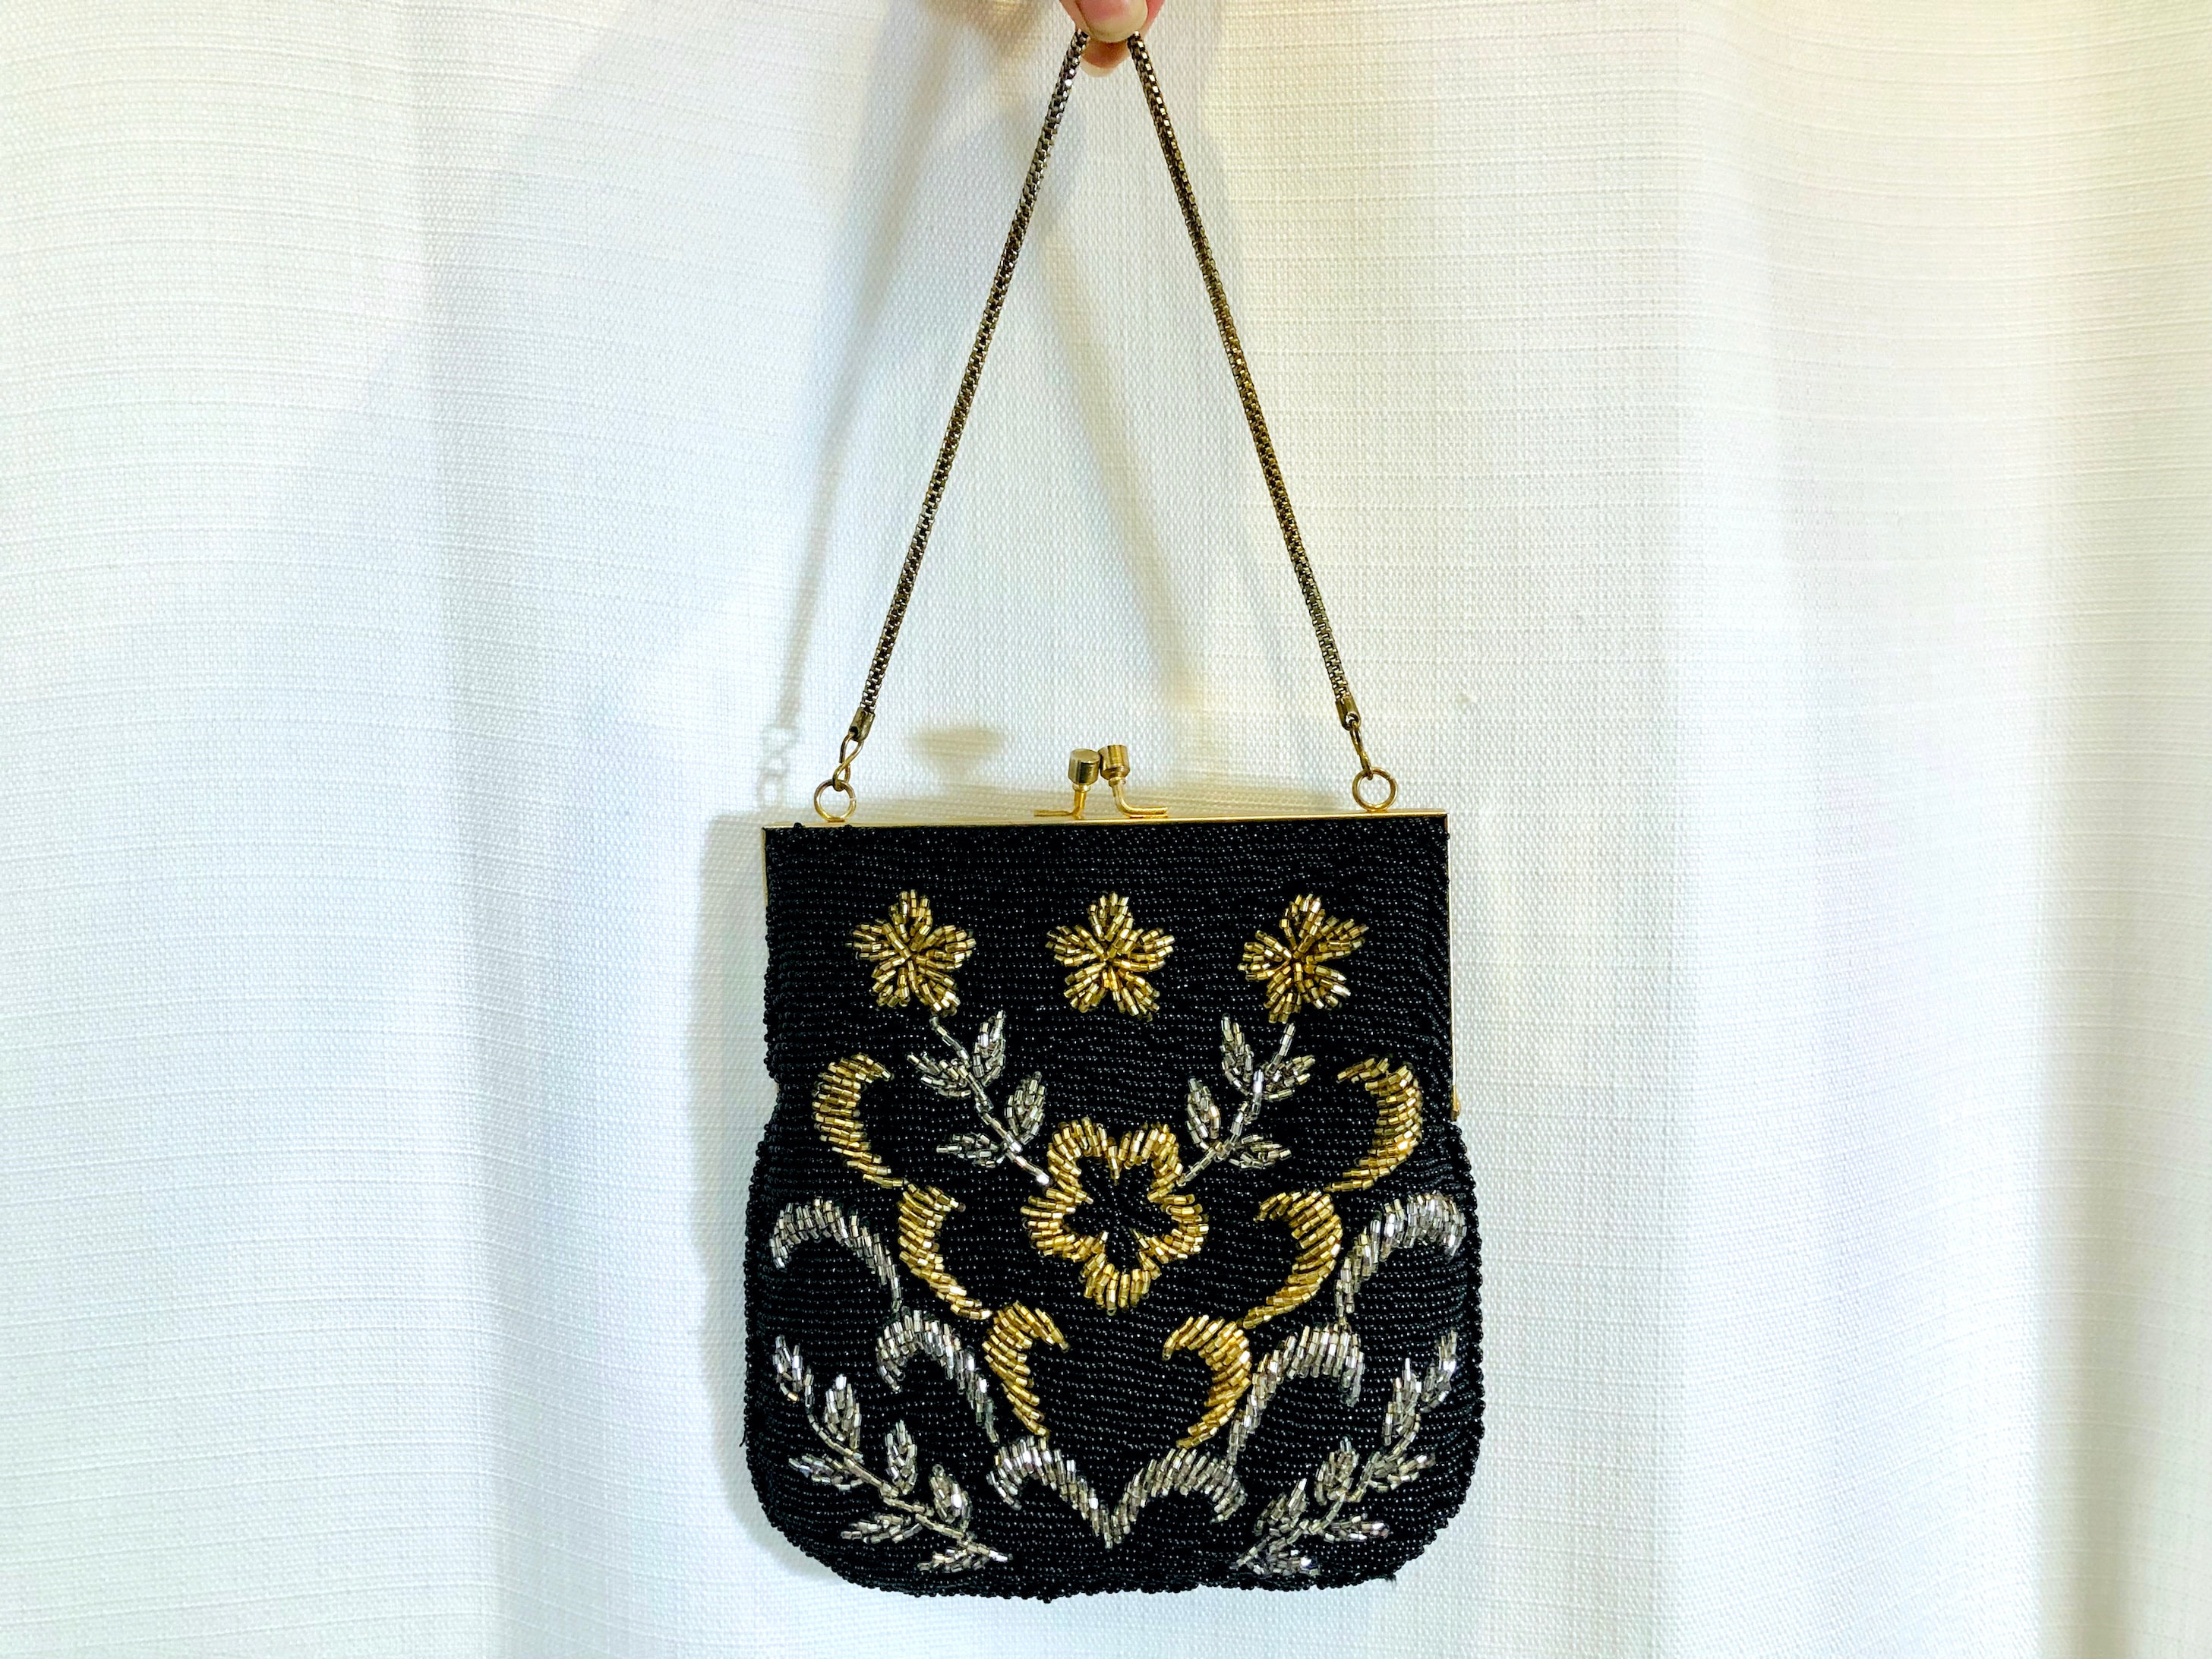 Vintage Lewis Handbag Black Patent Leather La Regale Lord & Taylor Lot 3  Purses